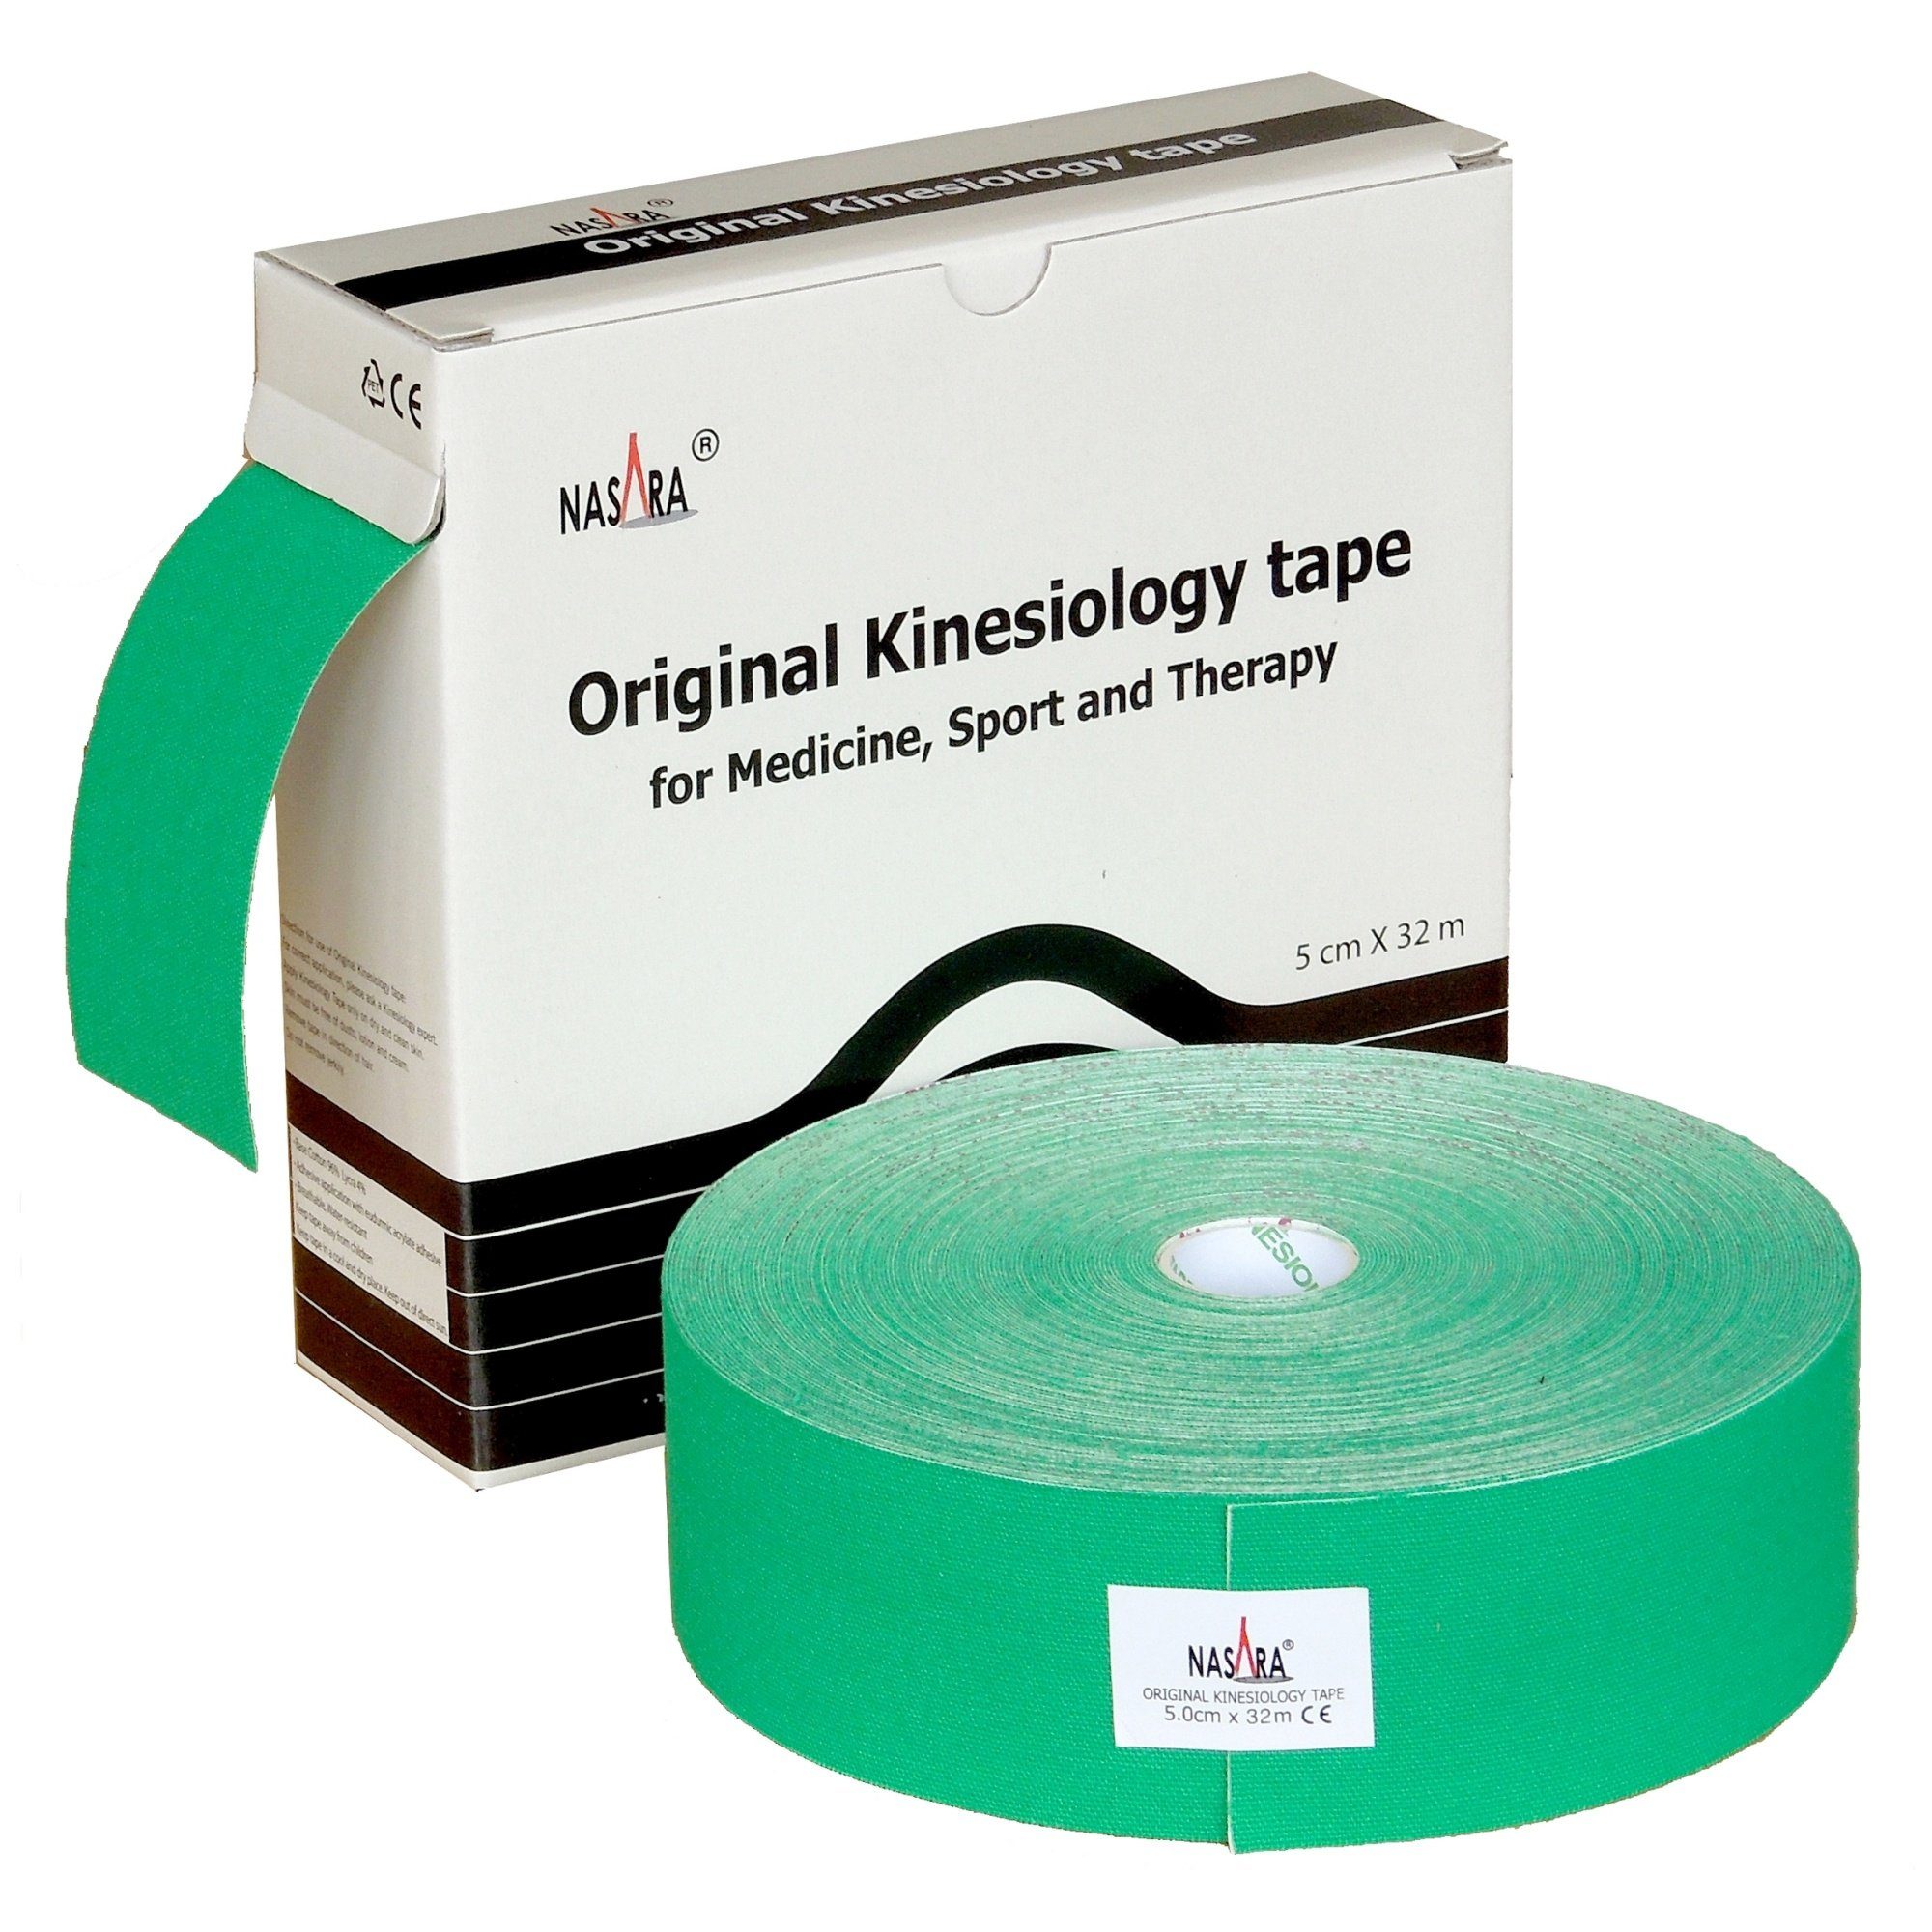 NASARA Kinesiologie-Tape 5cm x 32m in 10 Farben